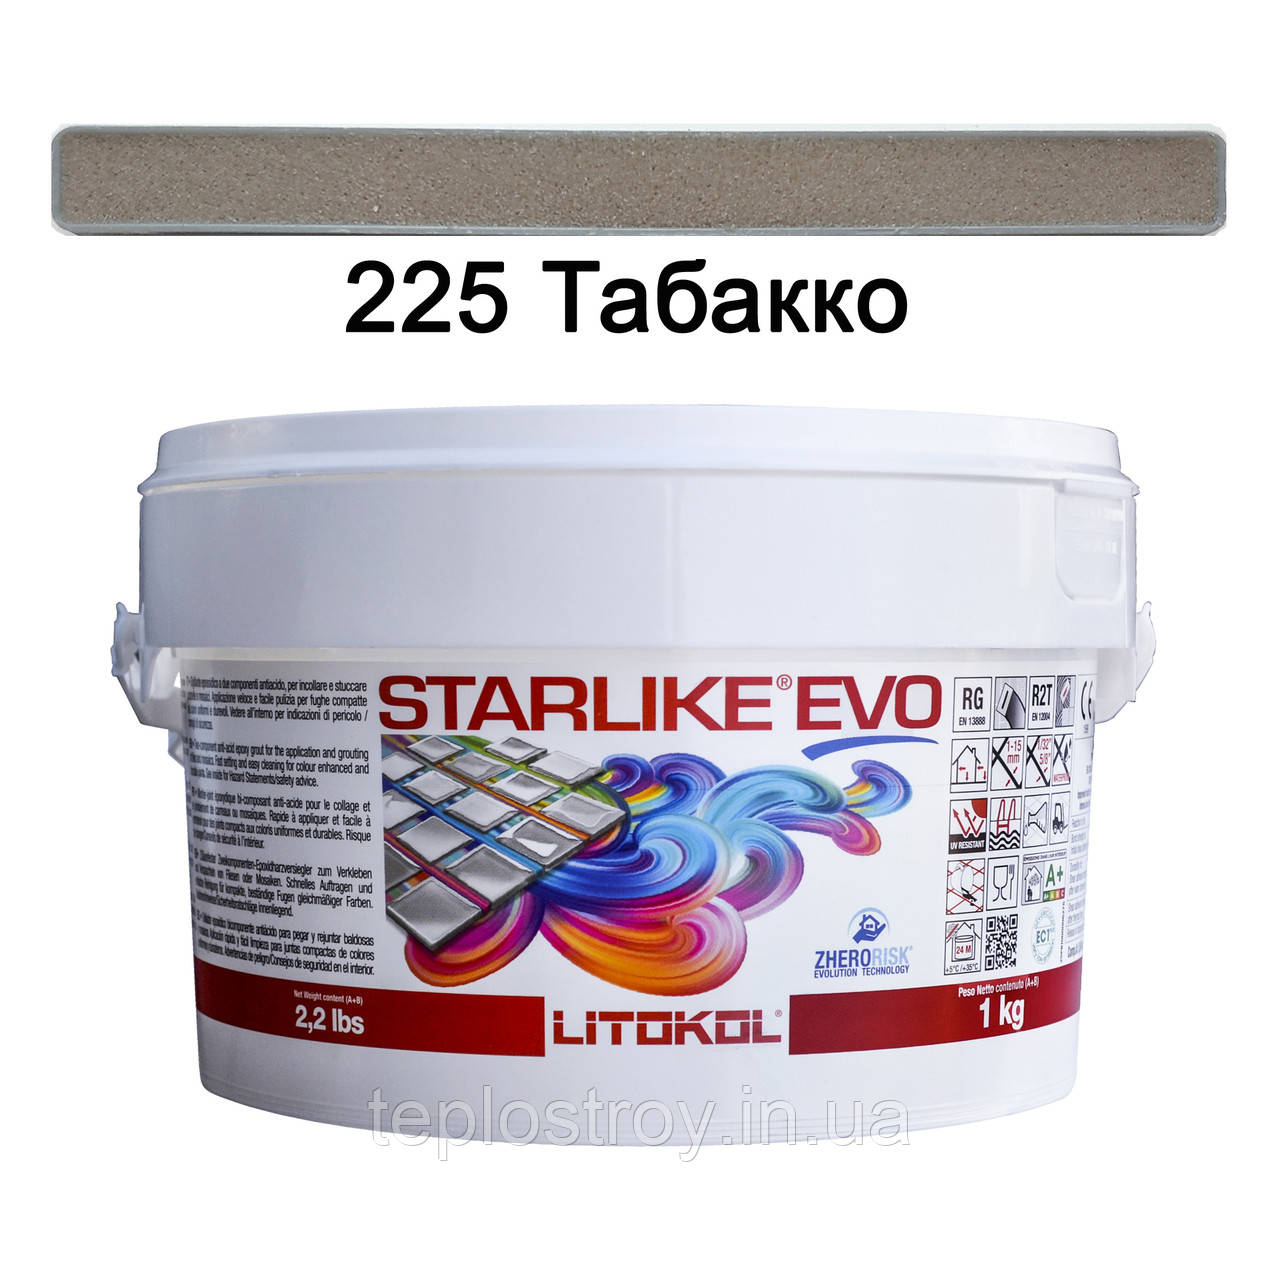 Епоксидна затирка Litokol Starlike EVO 225 (Табакко) CLASS WARM COLLECTION, 1 кг